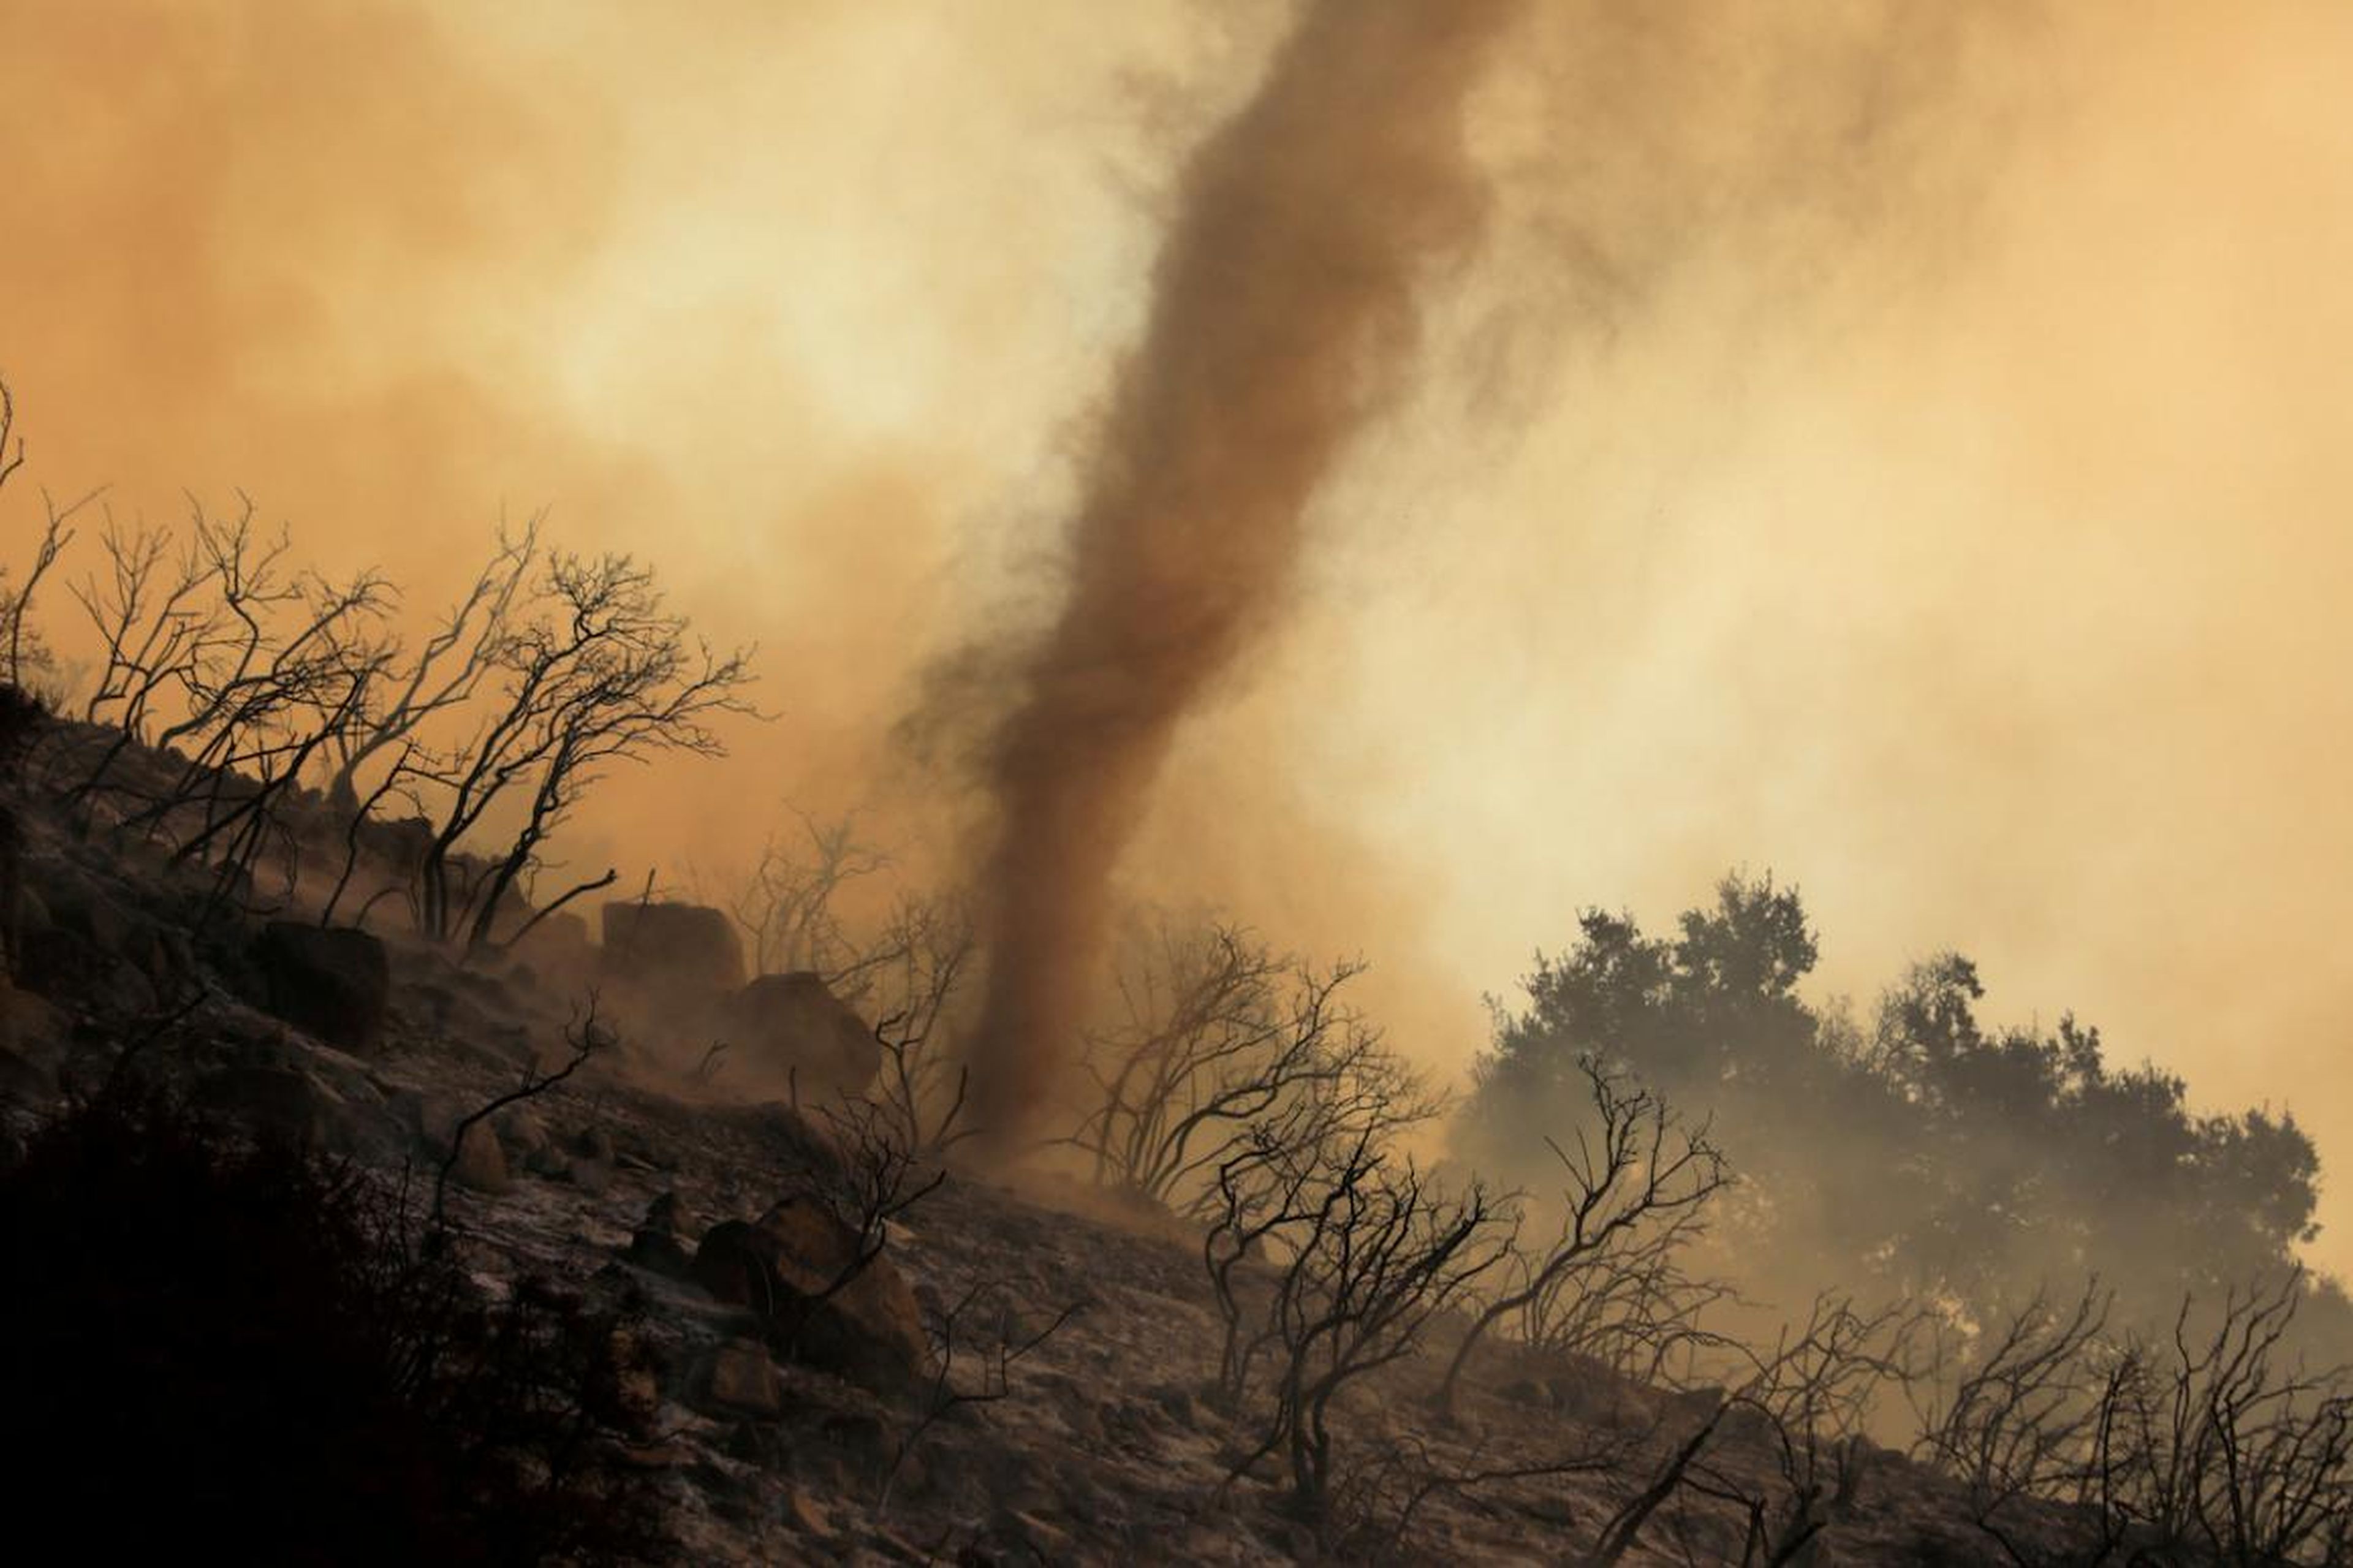 Un torbellino de cenizas y brasas calientes se mueve a través de un incendio forestal, llamado el Fuego de la Cueva, que arde en las colinas de Santa Bárbara, California, el 26 de noviembre.